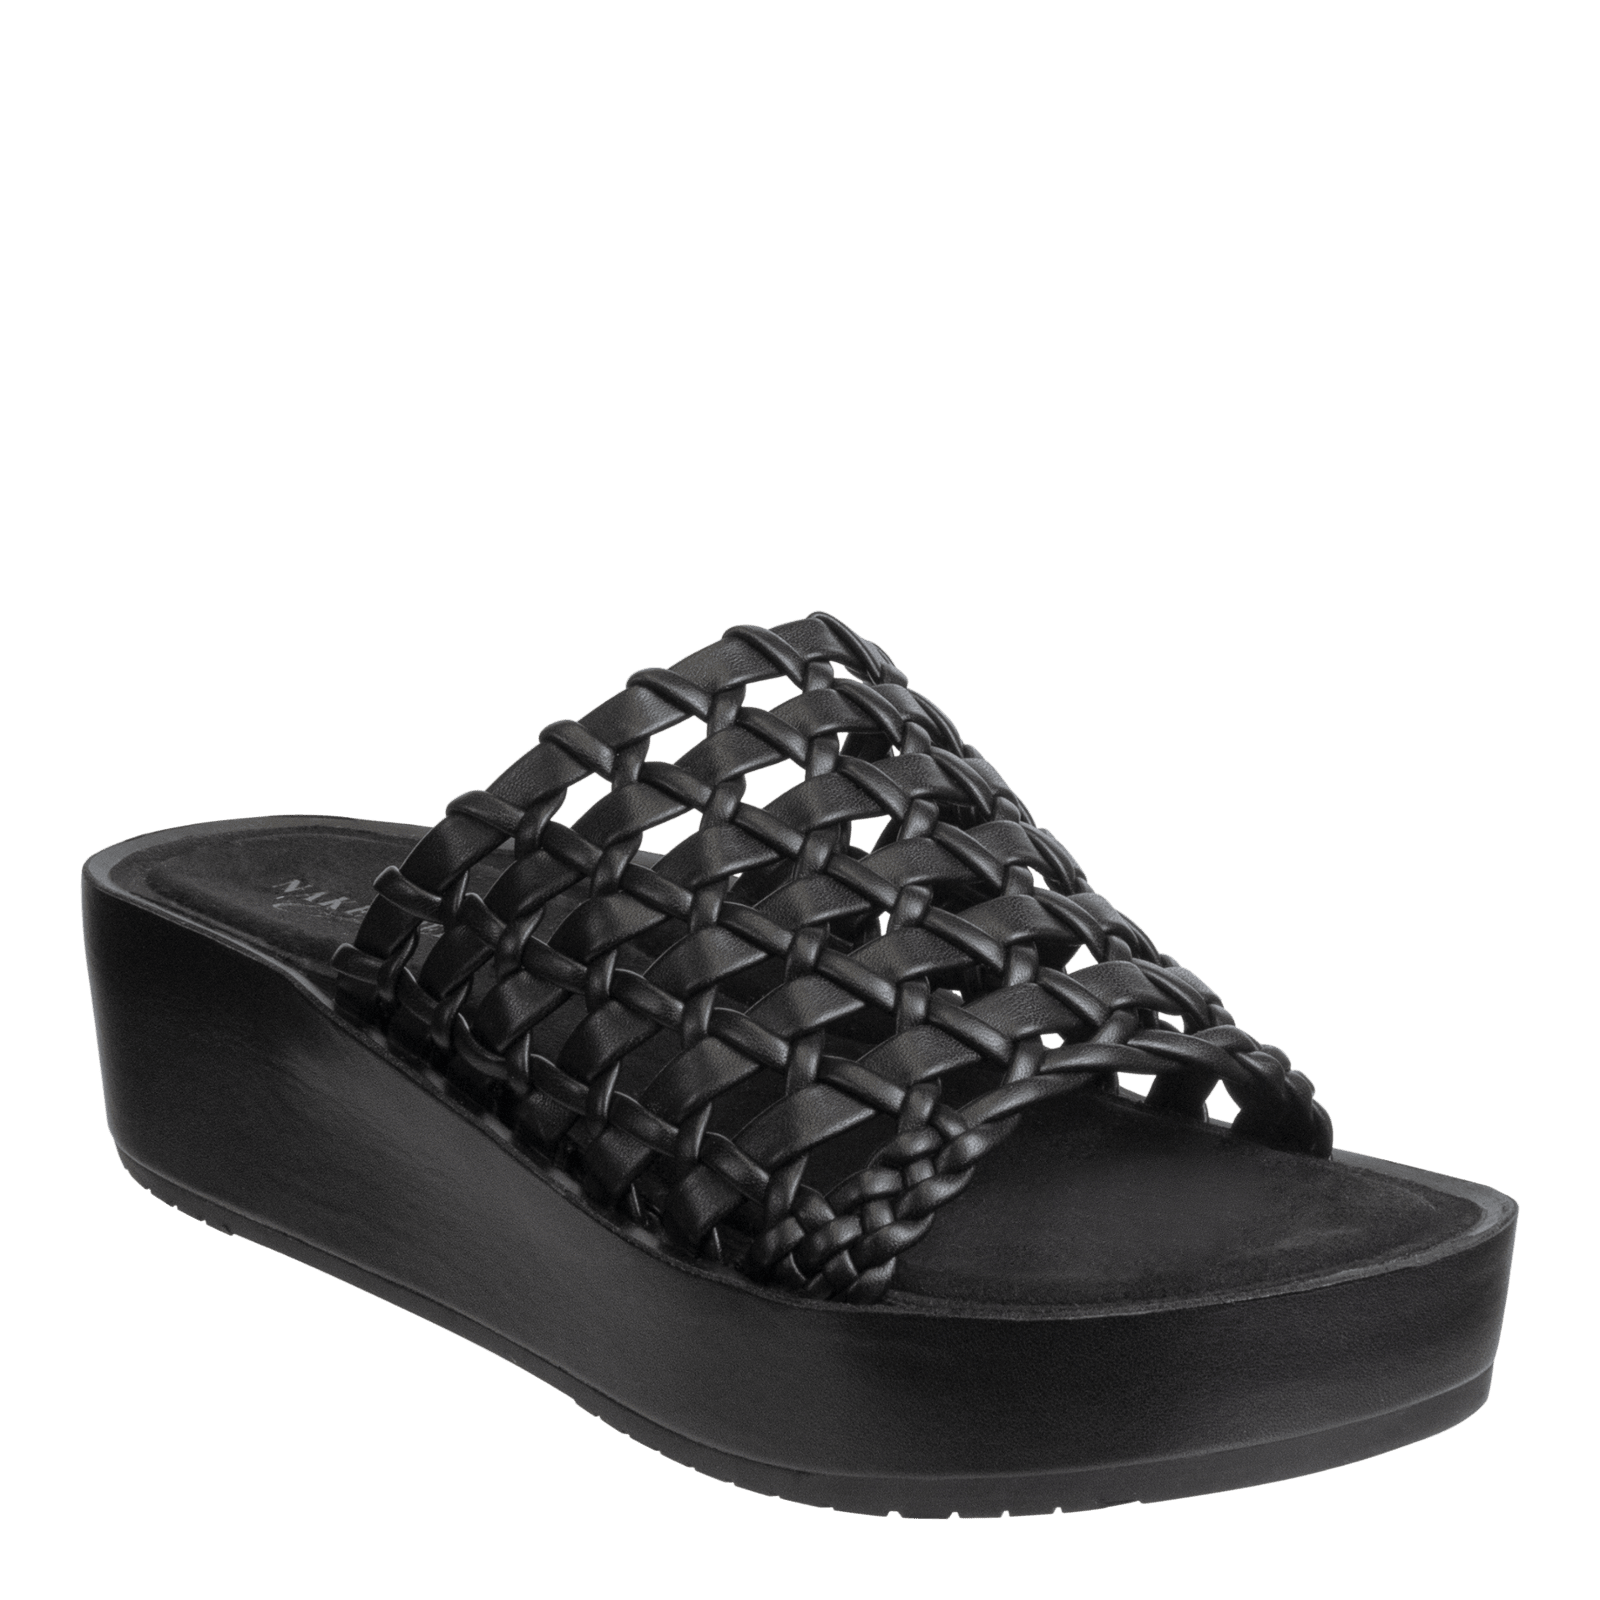 NAKED FEET - CYPRUS in BLACK Platform Sandals WOMEN FOOTWEAR NAKED FEET 